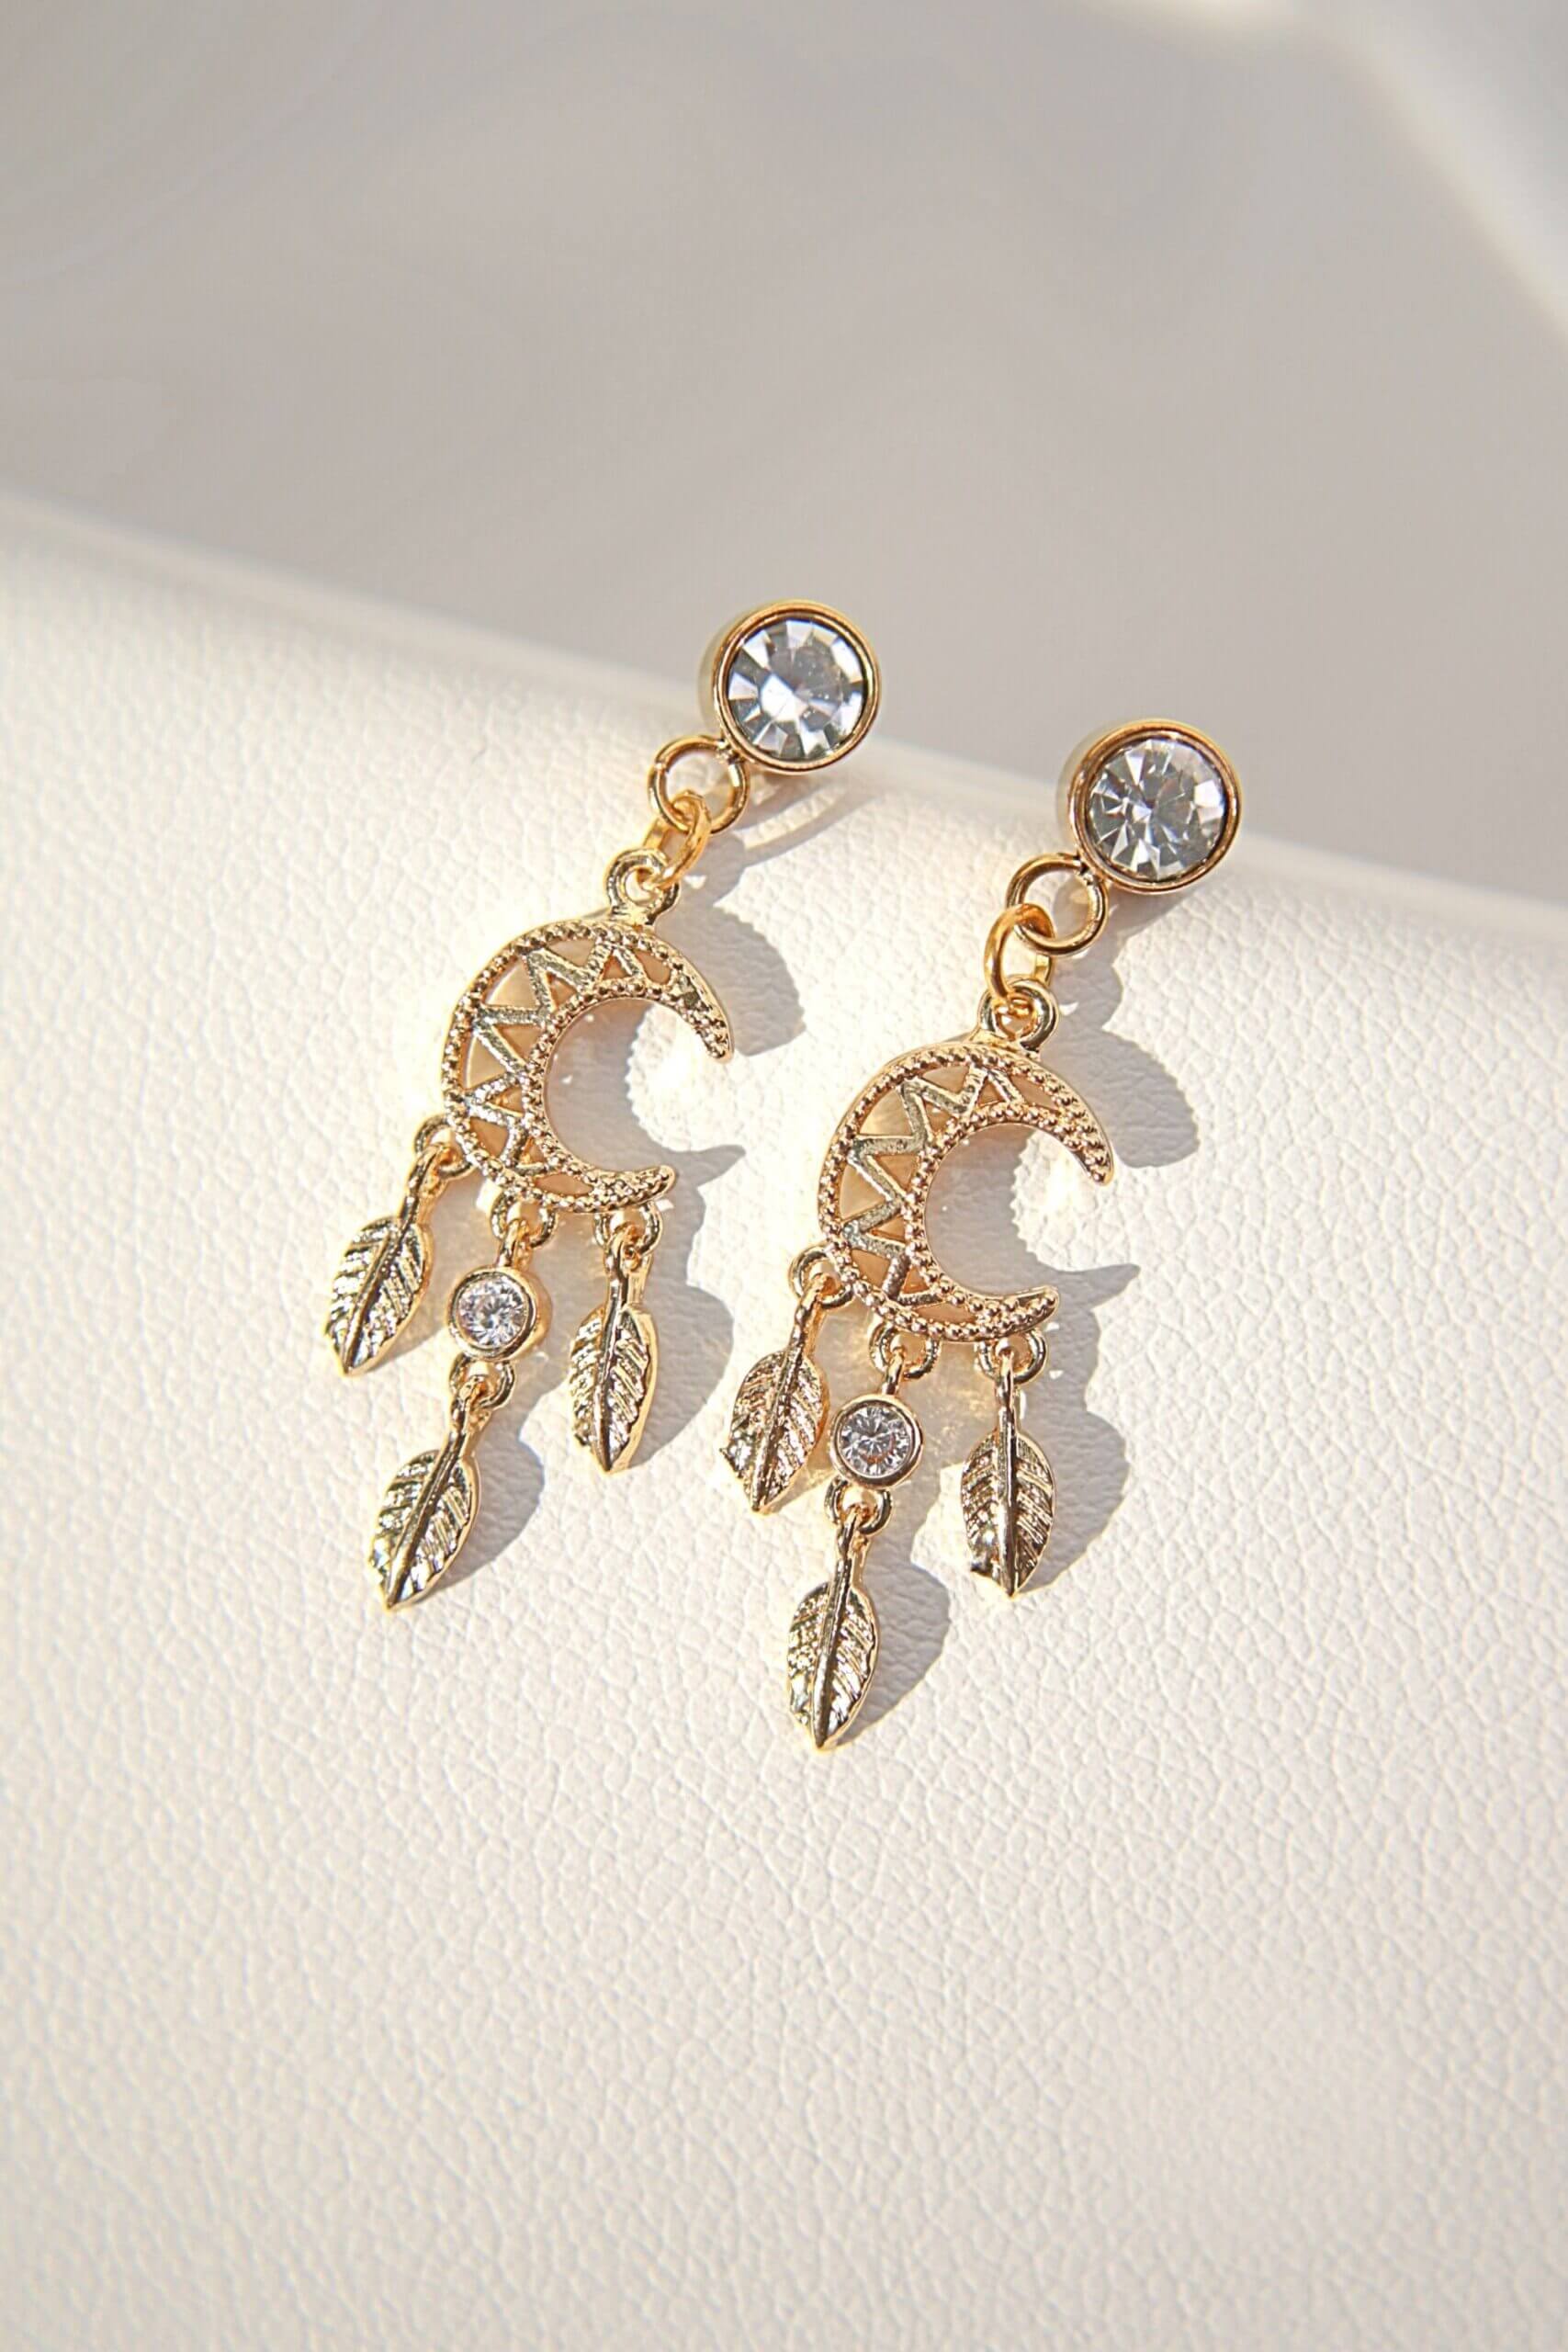 24 Karat Moon Stud Earrings - Dazzling Cubic Zirconia Dream Catcher Jewelry Bijou Her